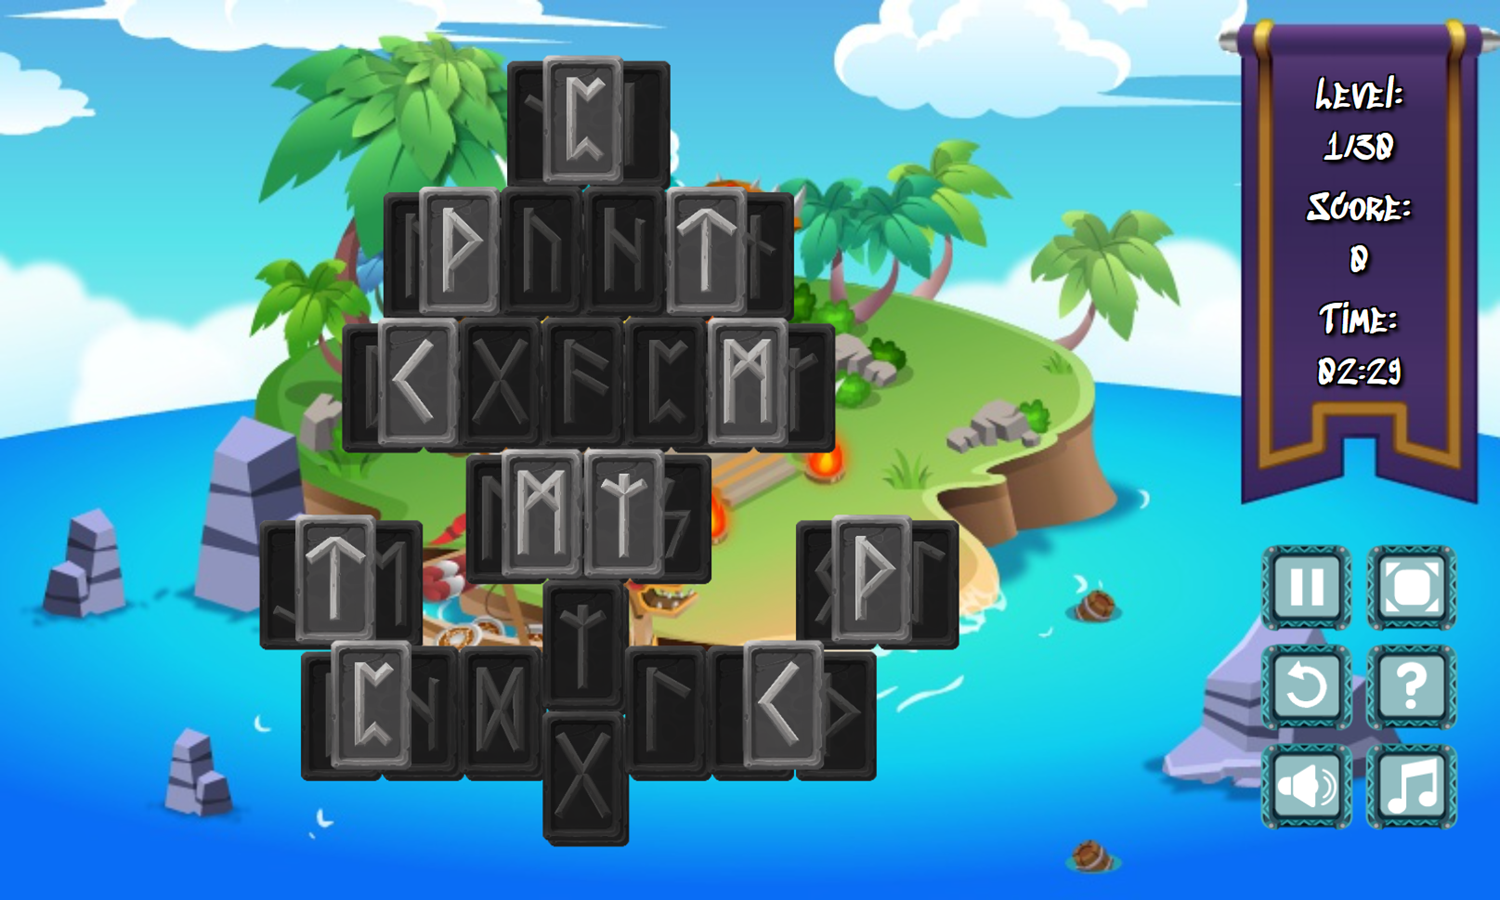 Rune Mahjongg Game Level Start Screenshot.